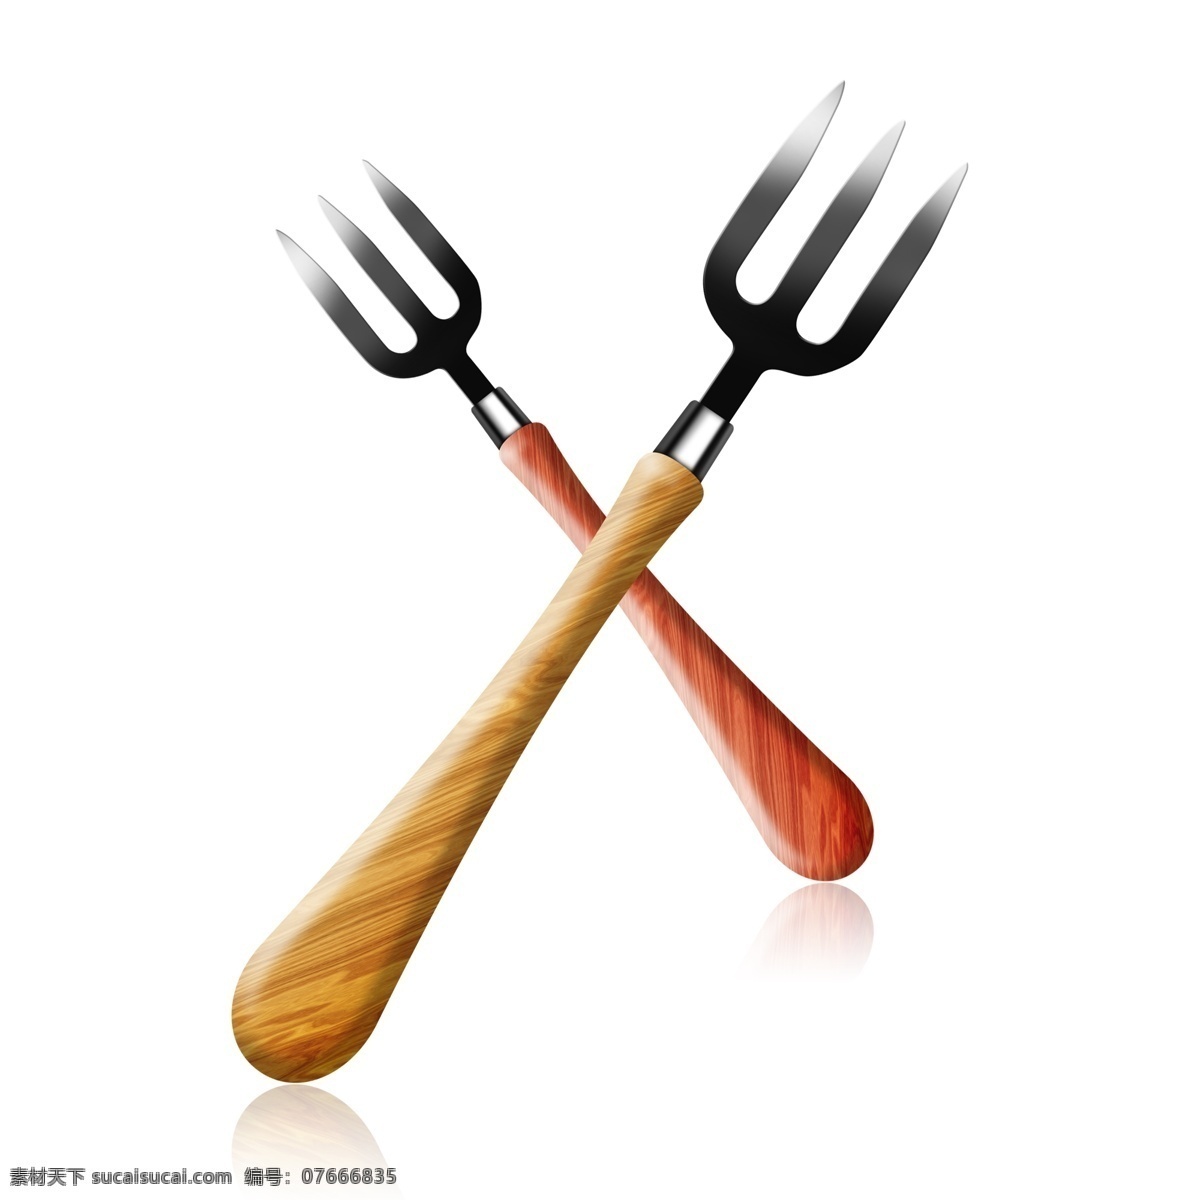 生活用品 叉子 效果 图案 商用 餐具 刀叉 吃饭 木叉子